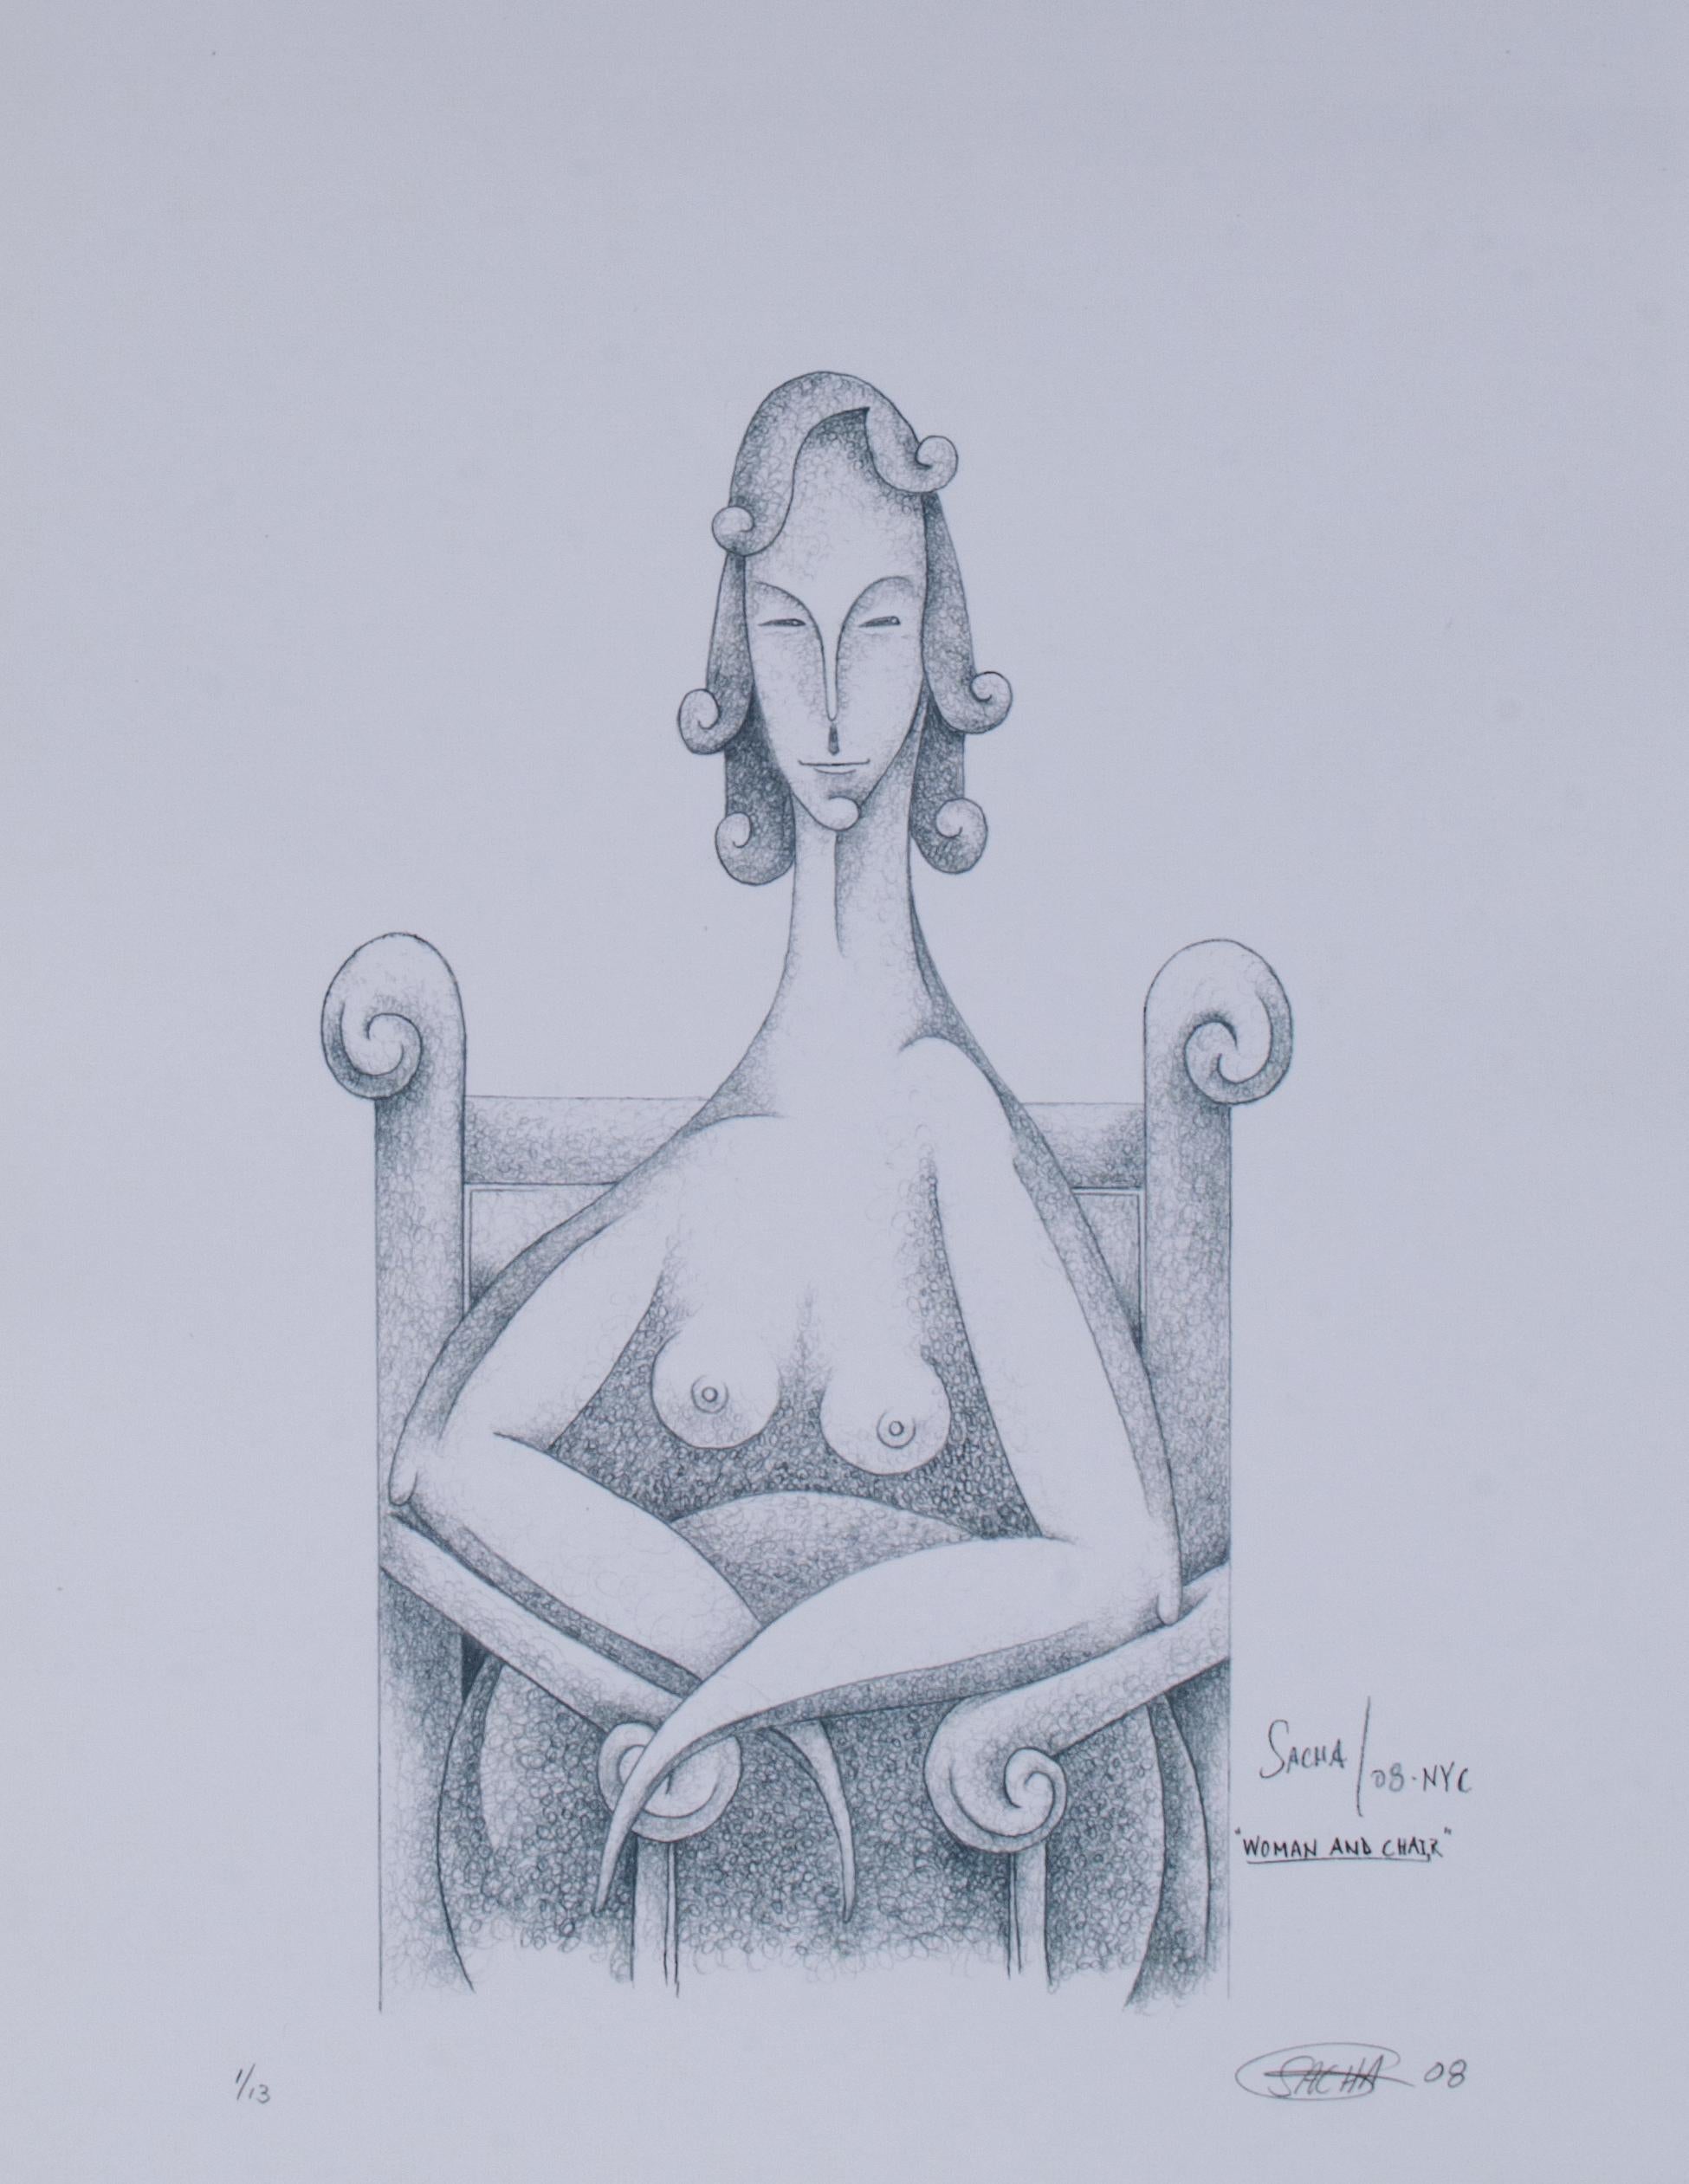 Femme nue surréaliste, signée SACHA